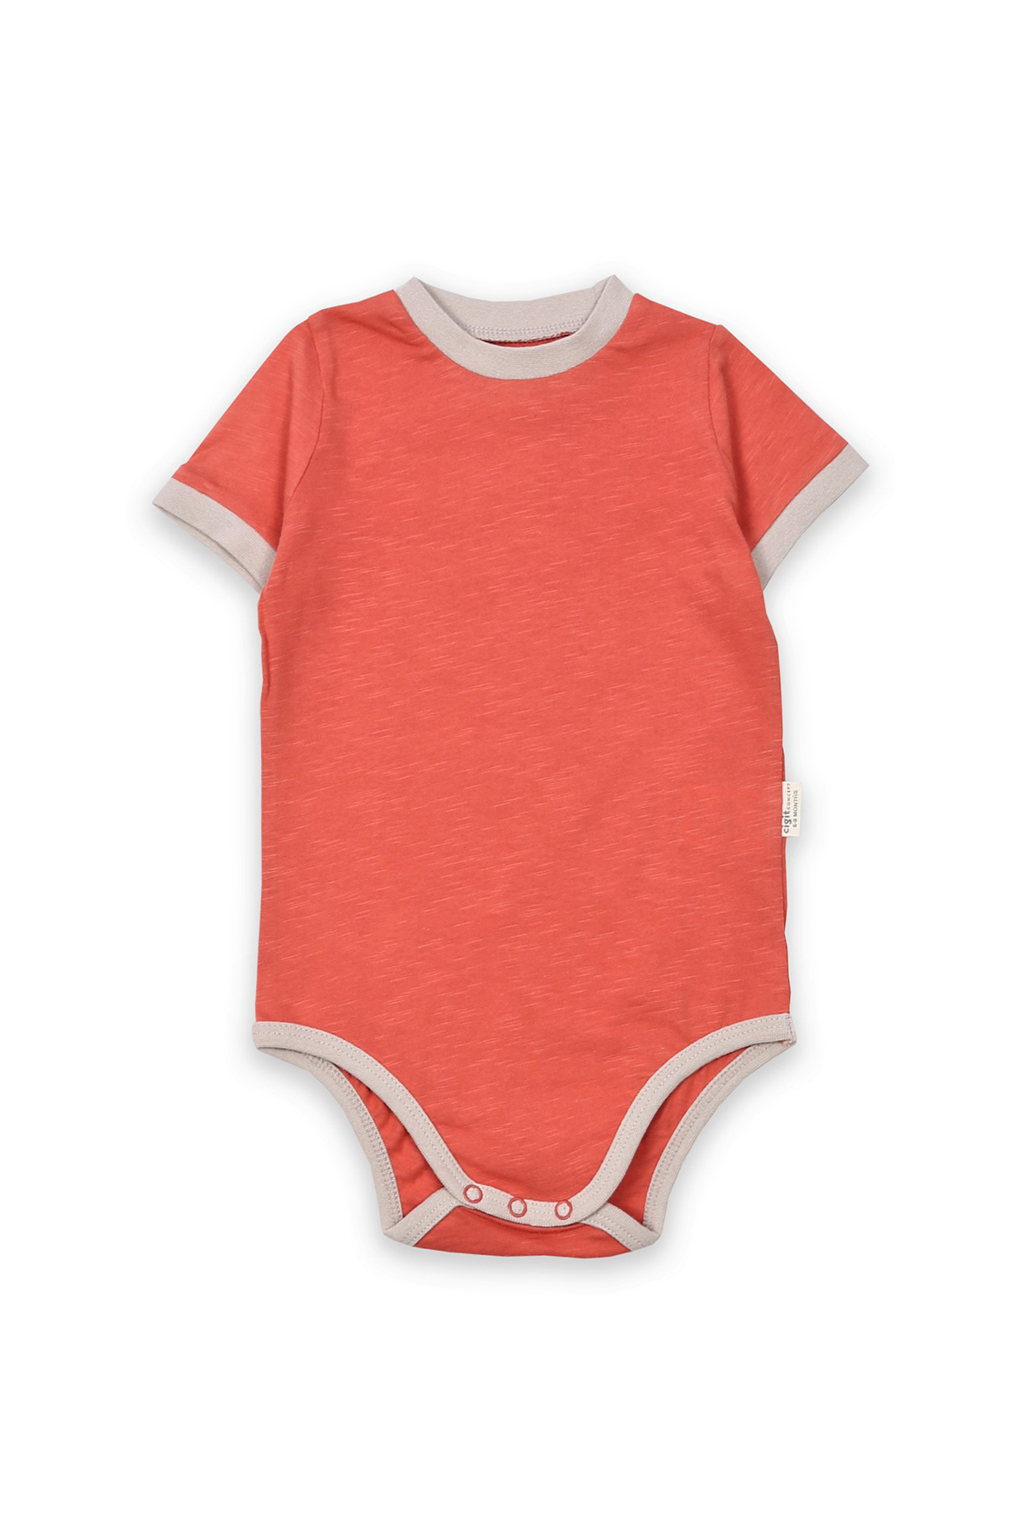 Body pro miminko organic, oranžové (Dětské oblečení) Velikost: 68